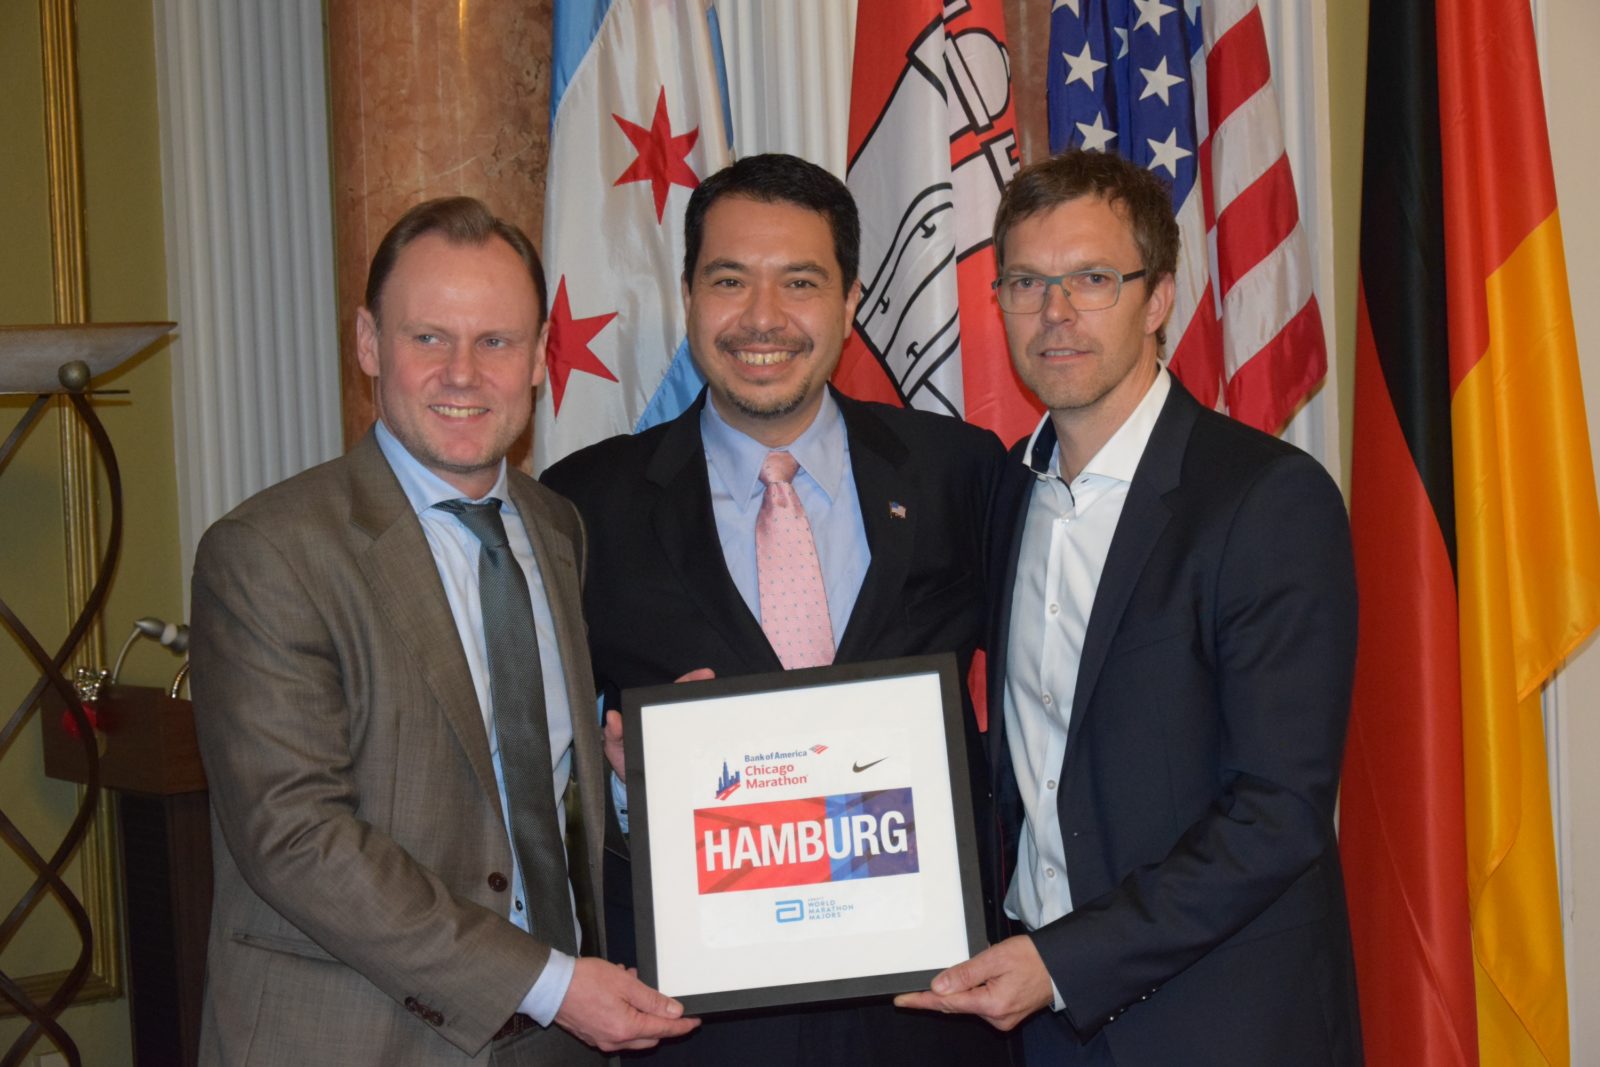 Würdigung der Marathon-Verbindung der Partnerstädte Hamburg und Chicago